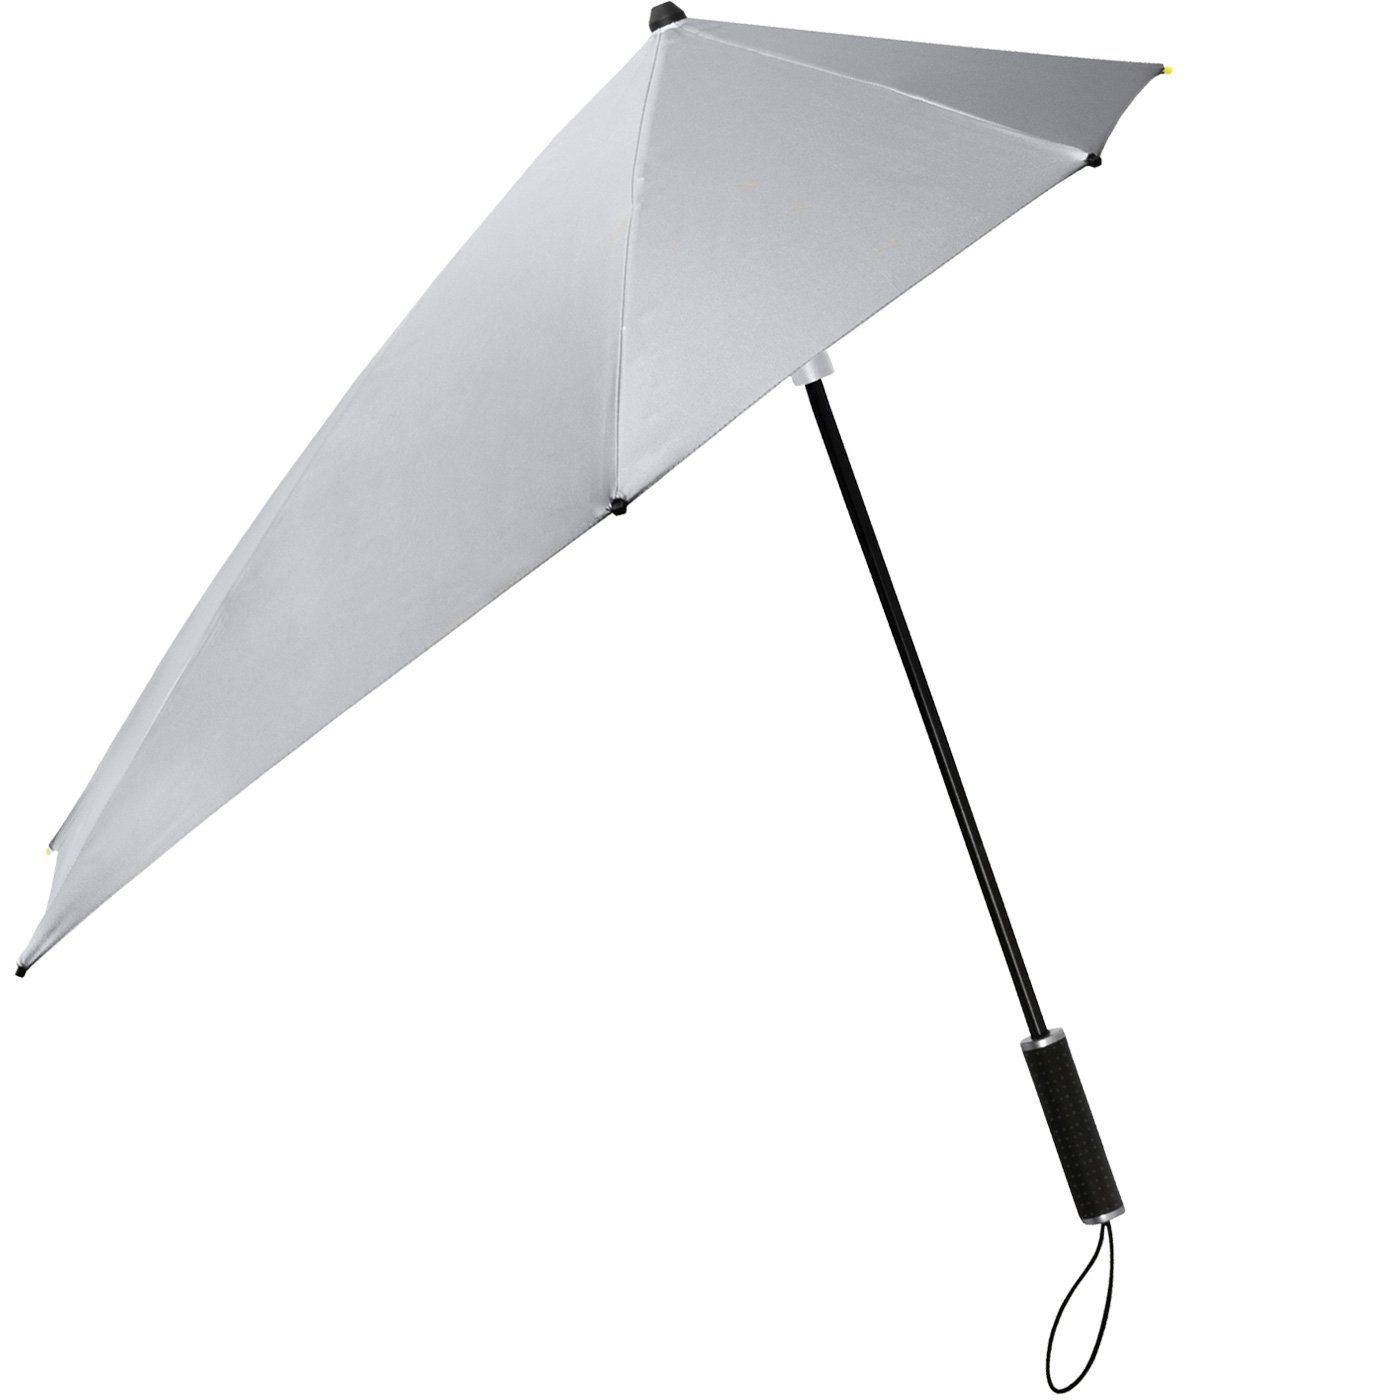 Form Stockregenschirm zu aerodynamischer seine in km/h hält sich Regenschirm, Schirm silber bis durch der besondere aus STORMaxi 100 Sturmschirm Impliva Wind, den dreht